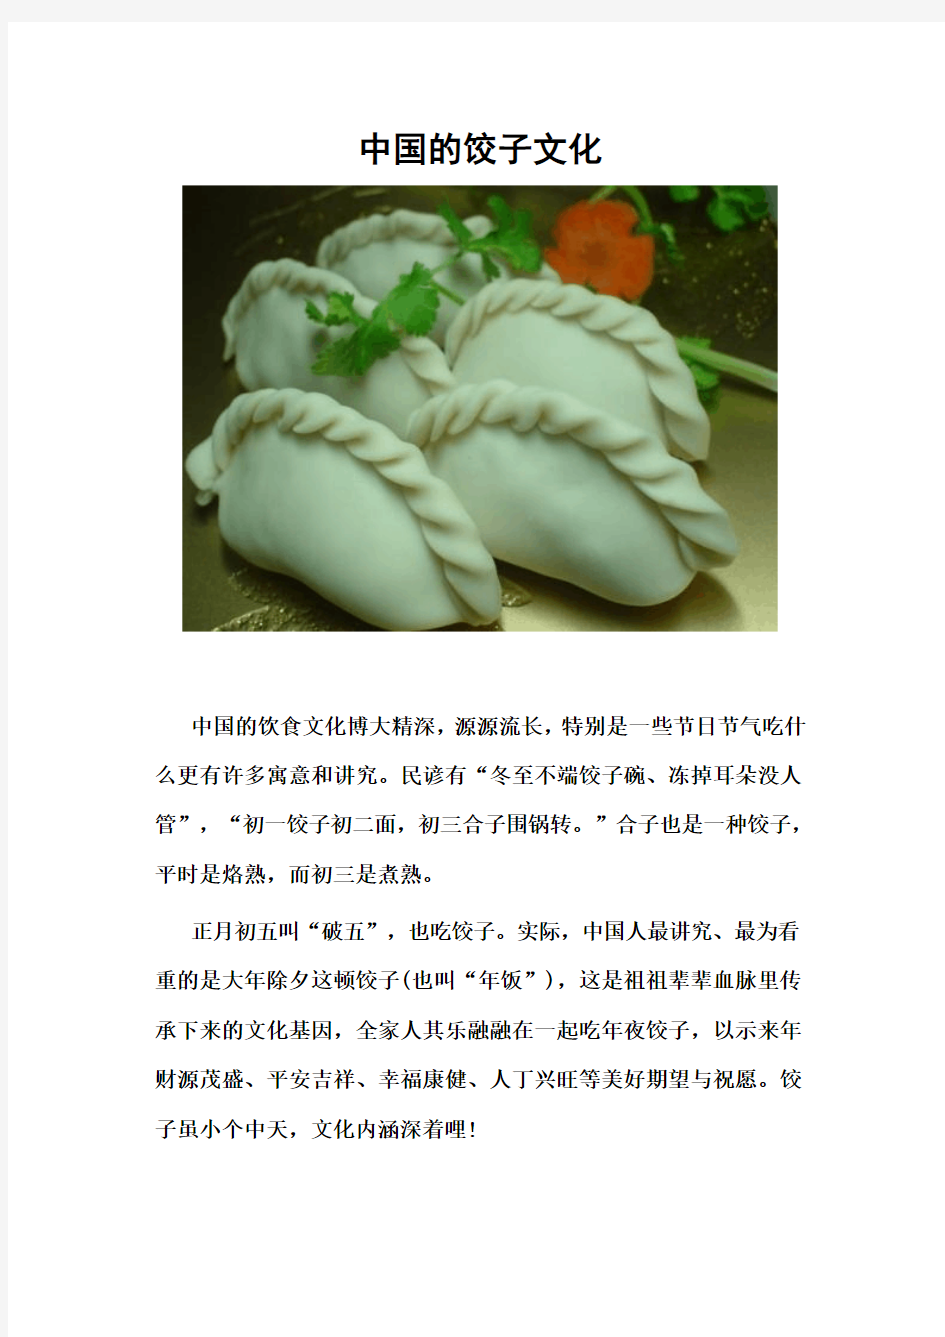 中国的饺子文化